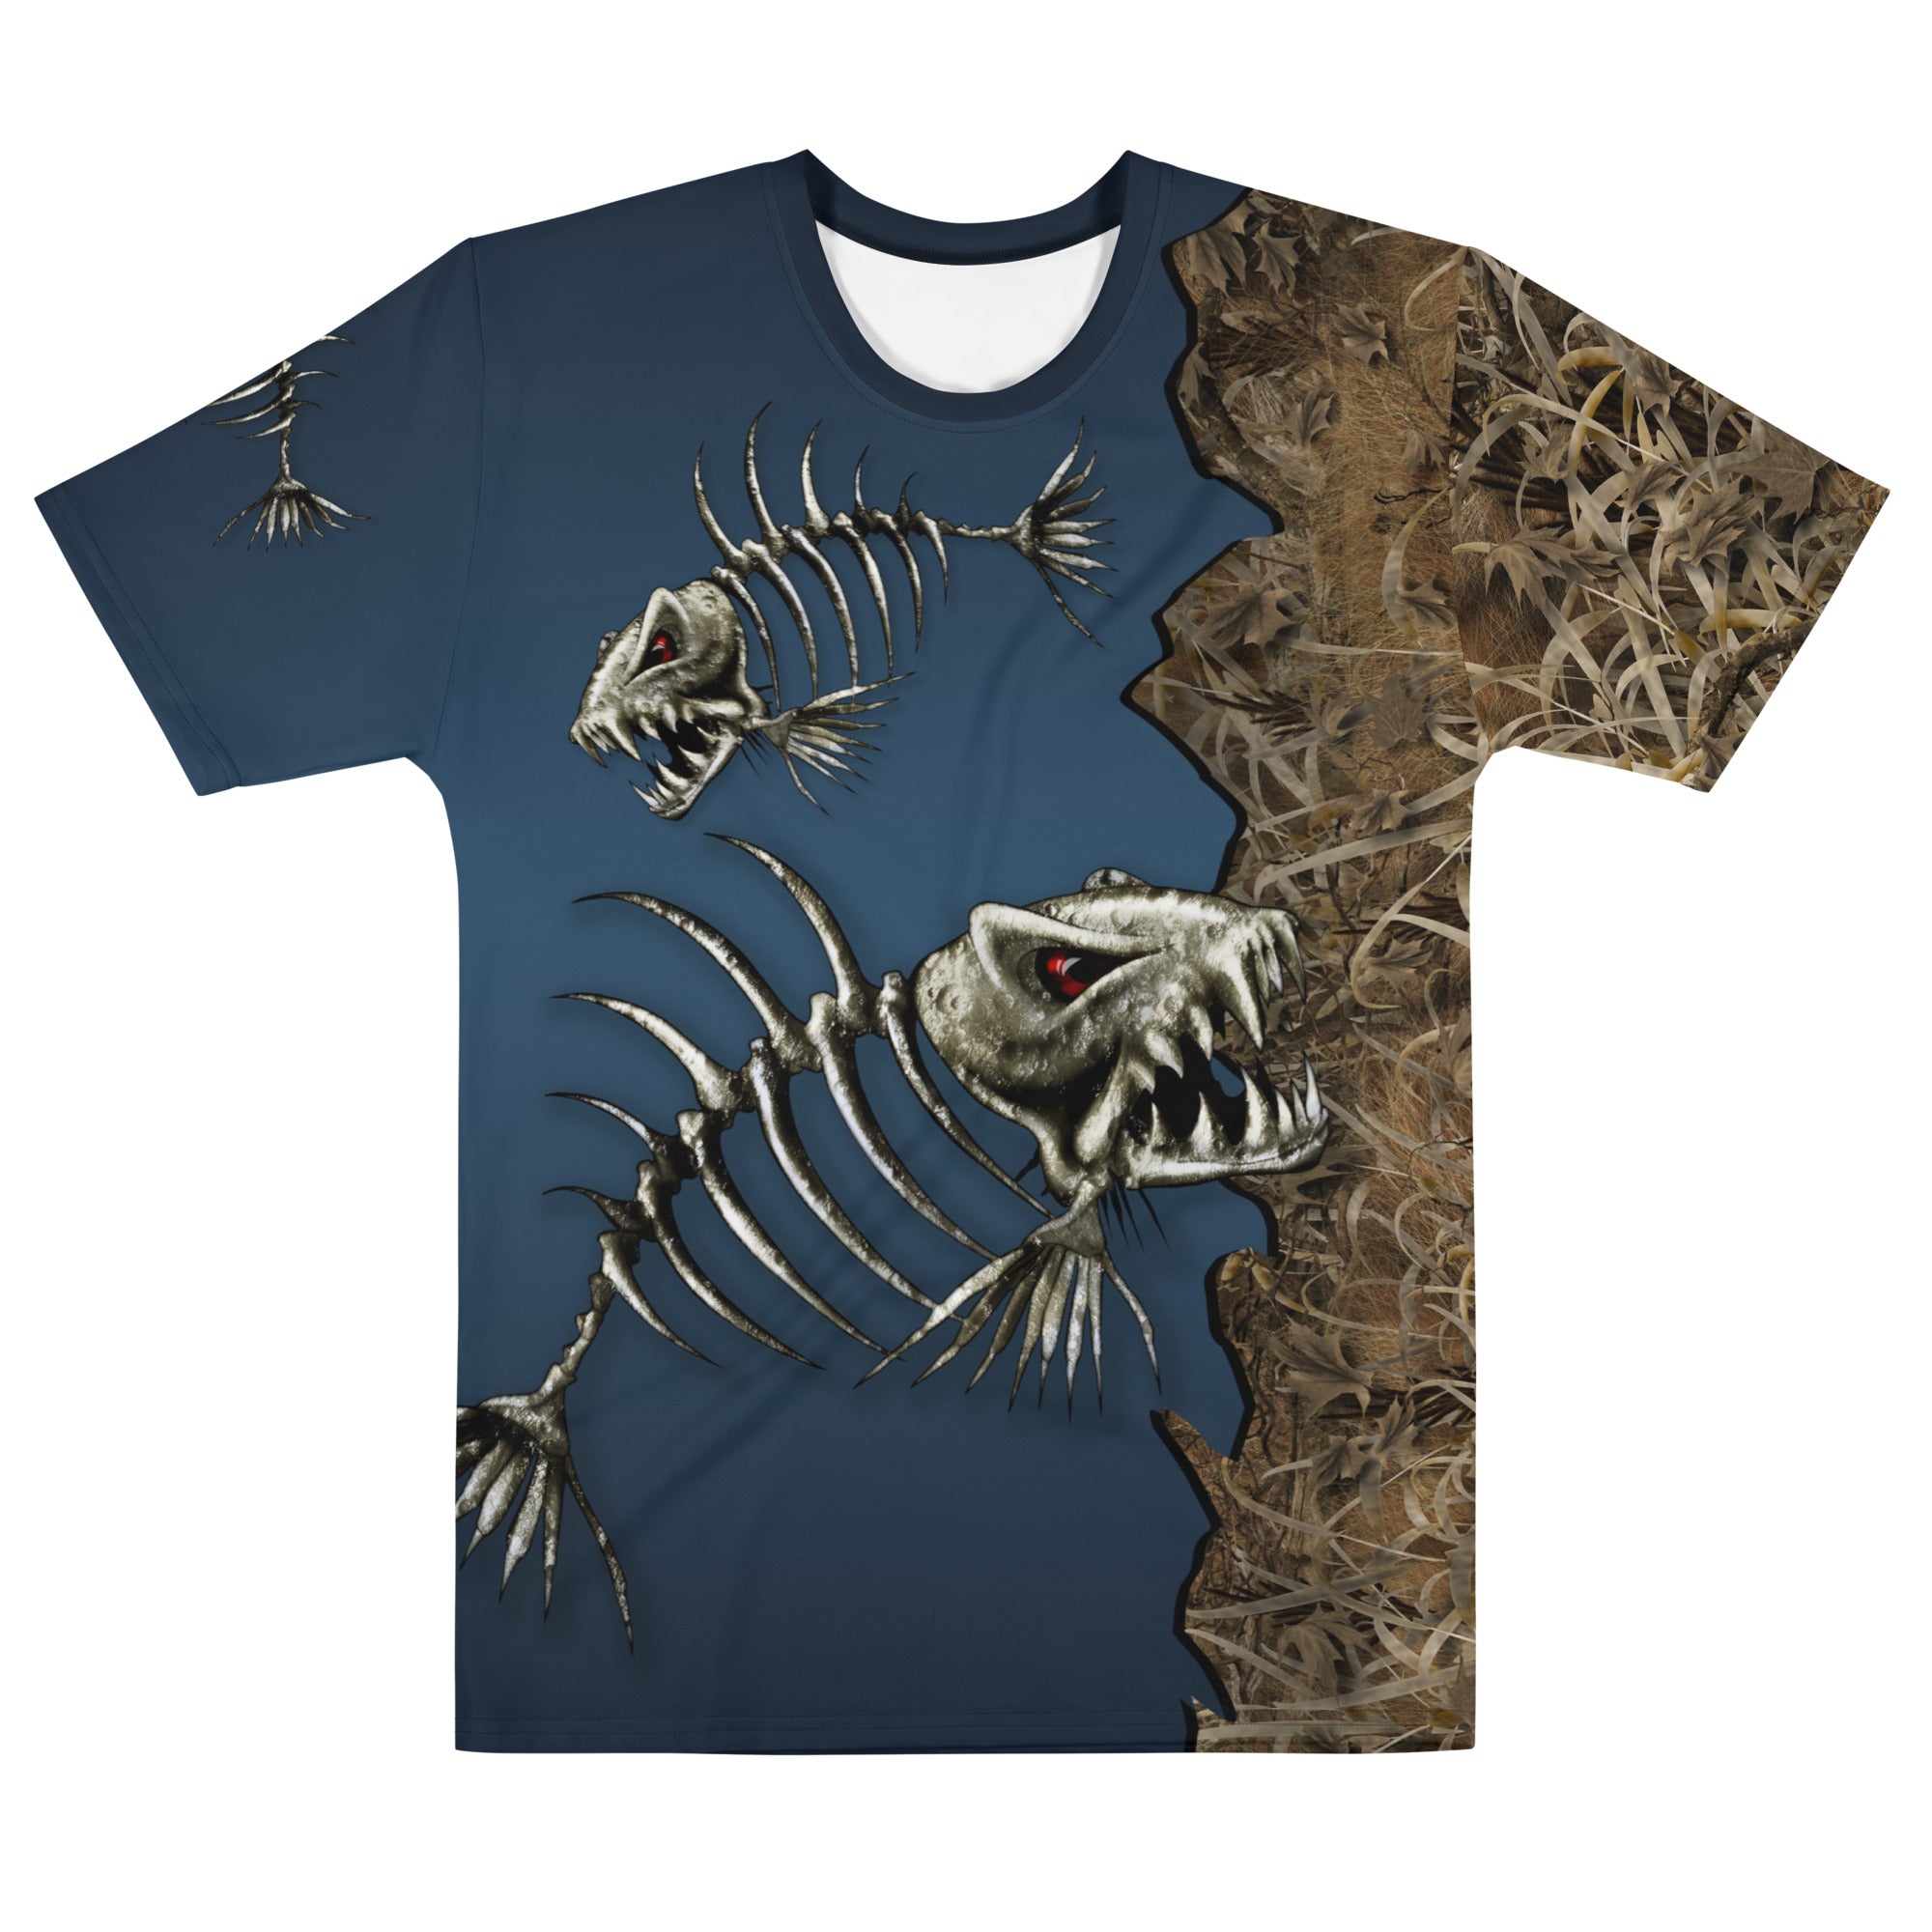 Knochenfisch 3D-Druckmenschen T-Shirt coole Sommermode Unisex Kurzarm T-Shirt Casual Tee Tops